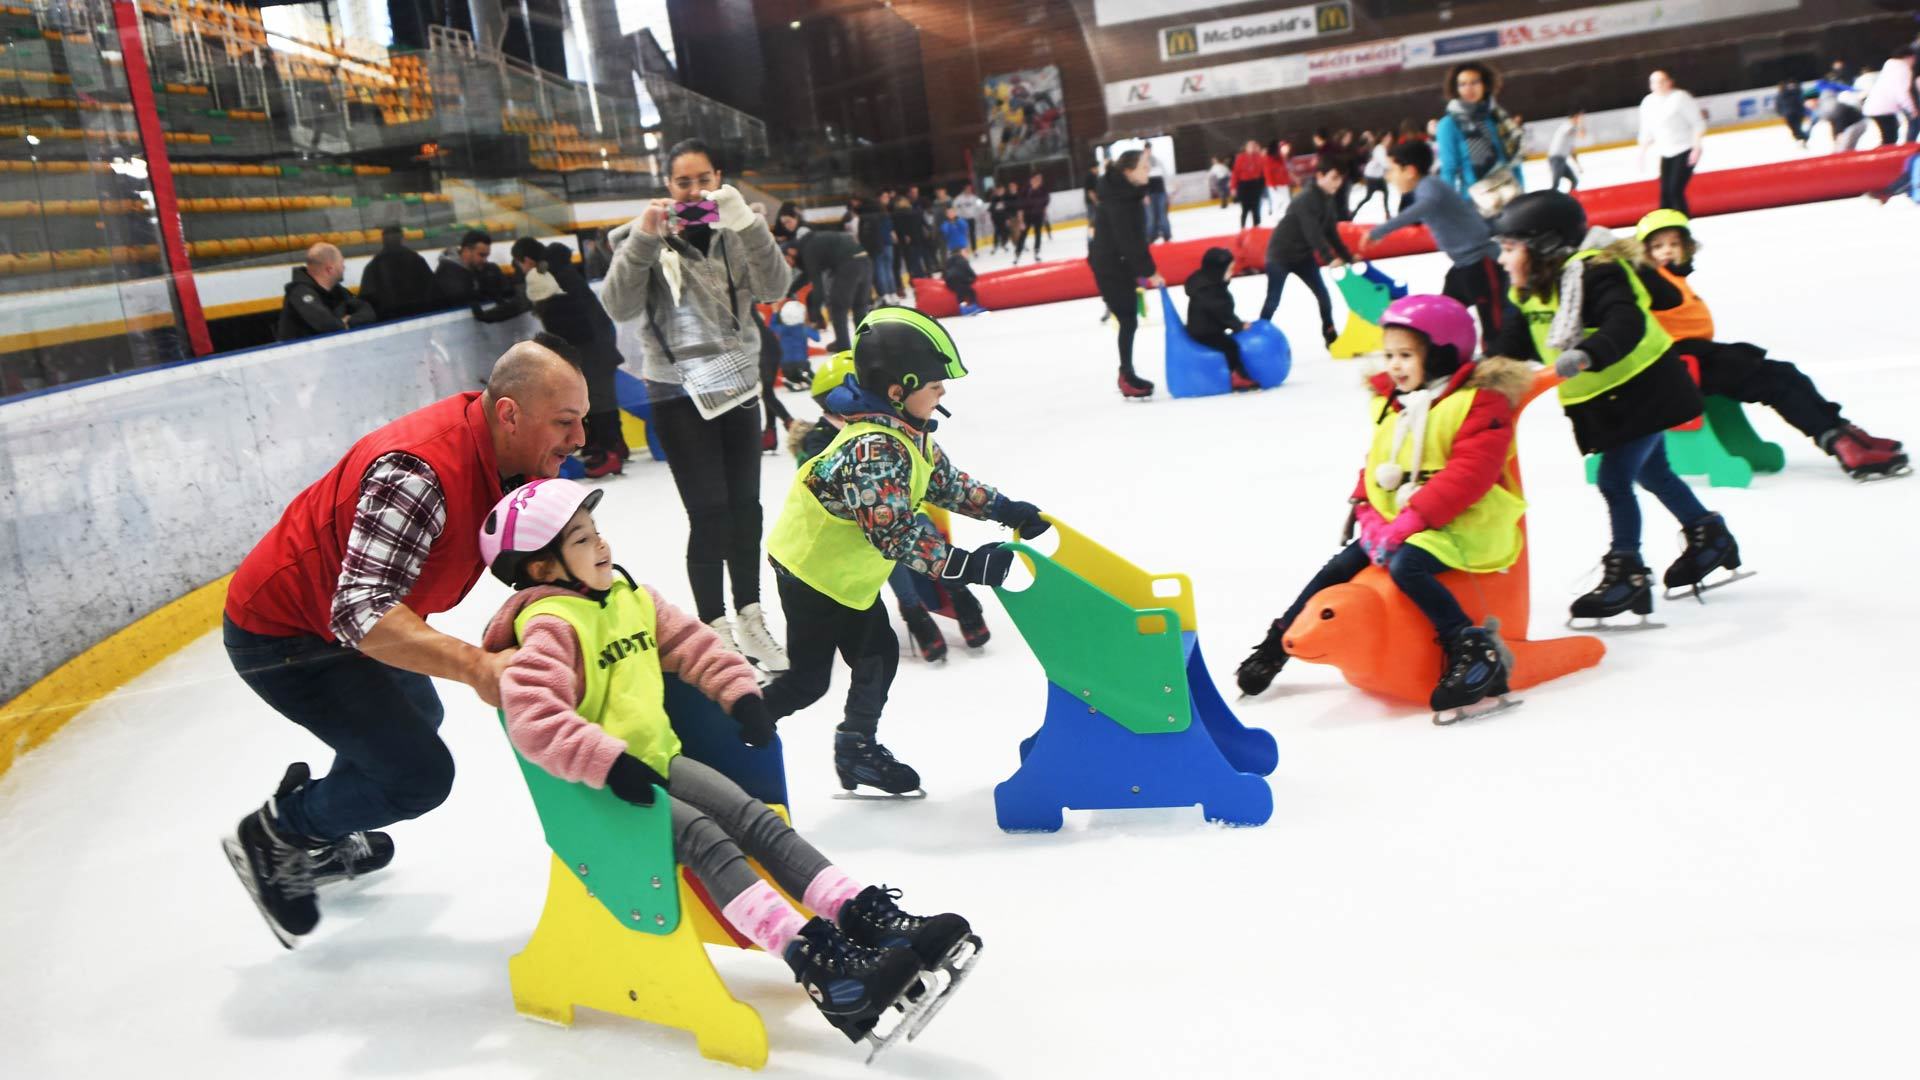 Des enfants font du karting sur glace à la Patinoire Olympique de Mulhouse